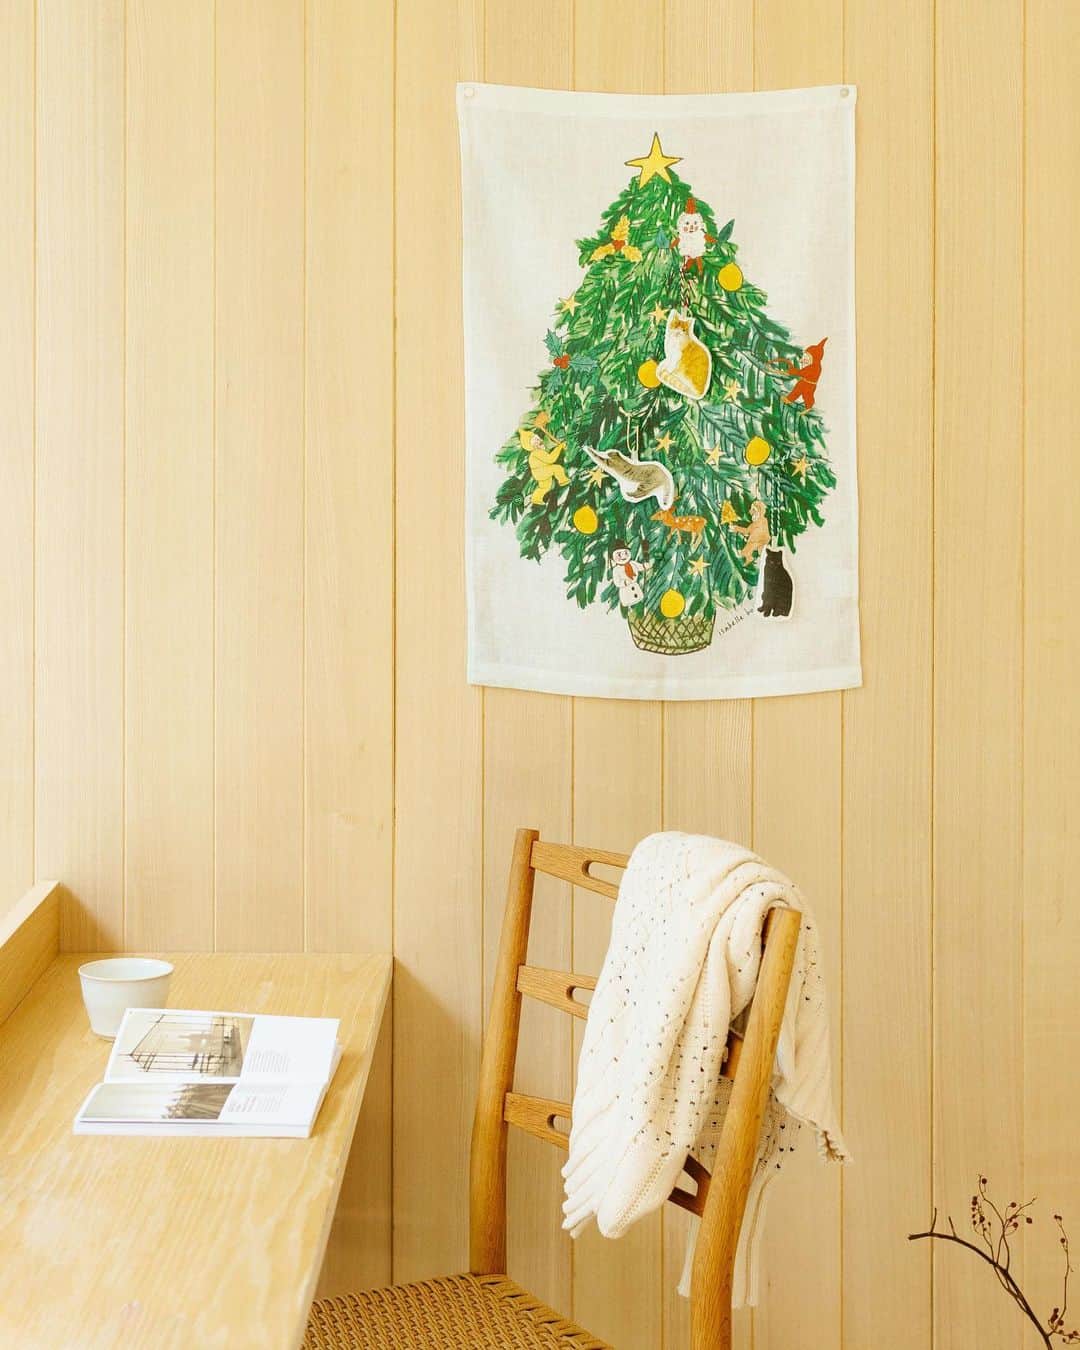 オルネ ド フォイユのインスタグラム：「isabelle boinot × fog linen work  クリスマスタペストリーと猫のオーナメントが再入荷📣  ●12月4日、18時頃の販売開始です🐈  前回好評いただいたフランス人のアーティスト、 イザベル・ボワノさんとfog linen workとの コラボレーションアイテムが再び届きます🎄  当店だけの限定デザインで、 リビングはもちろん玄関など、 どんなところにも素敵に飾れます。  タペストリーには6箇所ボタンが付いているので、 そこに引っ掛けることができます。  もちろん、手持ちのオーナメントも 飾っていただけますよ。  可愛い猫のオーナメントも 一緒に飾って楽しんでくださいね✨  商品名：isabelle boinot × fog linen work ∟クリスマスタペストリー ∟猫のオーナメント（3個セット）  ———————————————  ●商品詳細は 販売後、プロフィールのリンクからご確認ください。 👉@ornedefeuilles  ※検索画面で 「クリスマス」「オーナメント」でチェック🔎 ※オンラインショップと不動前店の取扱い商品は異なります。  #クリスマスツリー #クリスマスタペストリー #クリスマス #オーナメント #foglinenwork #isabelleboinot #xmas #christmas #暮らしを楽しむ #心地よい暮らし #丁寧な暮らし #ornedefeuilles #オルネドフォイユ」